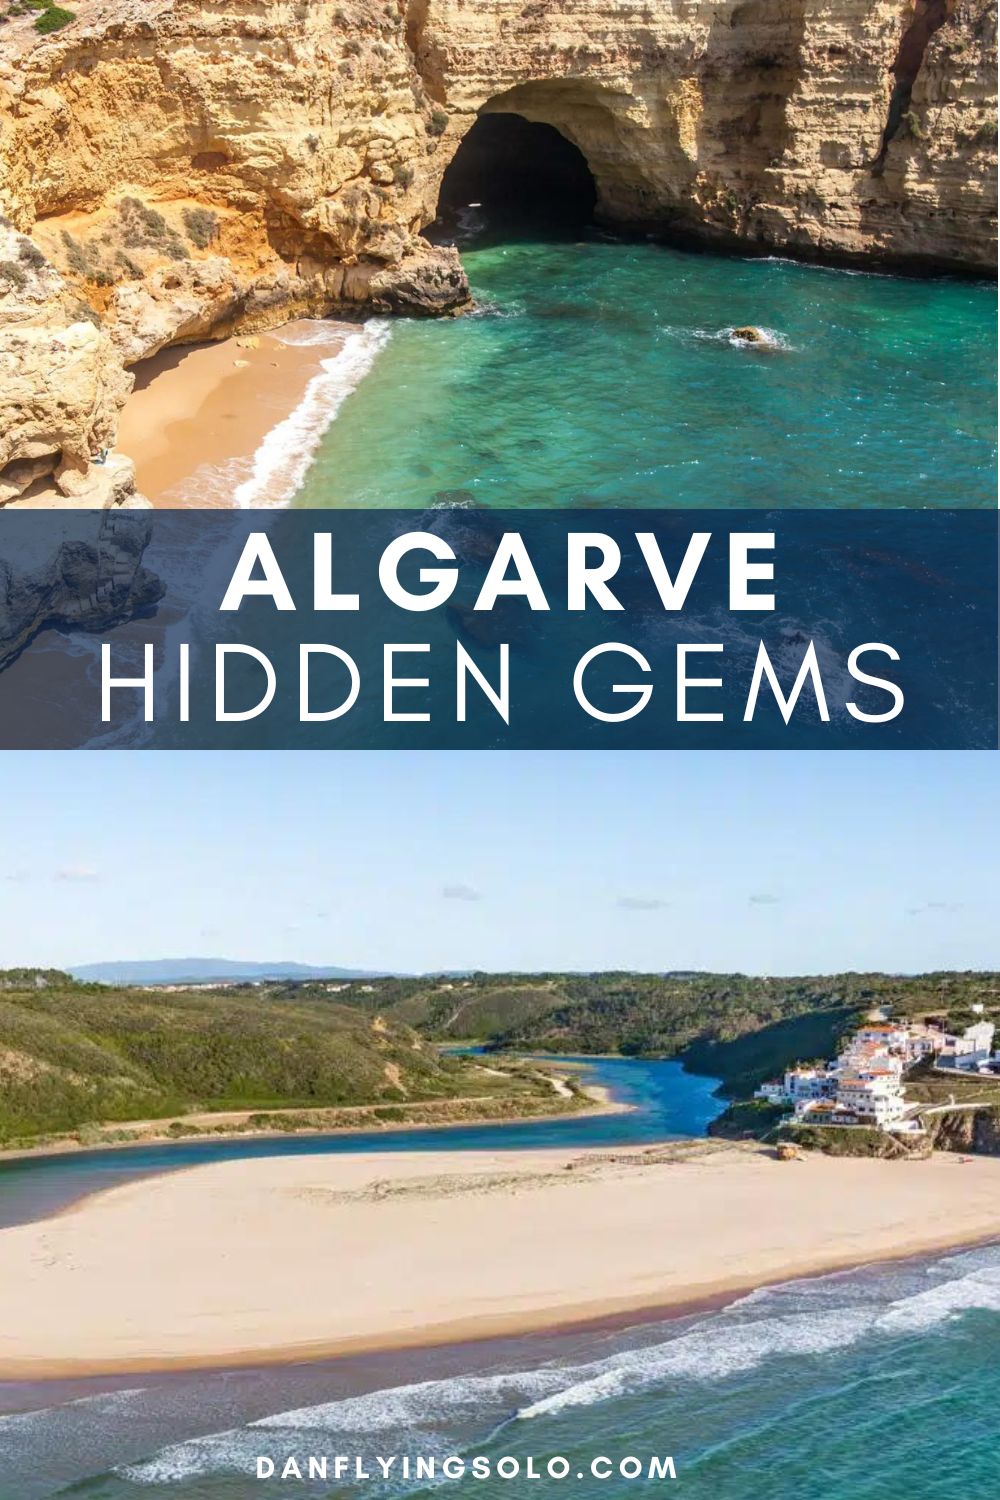 发现我选择最好的阿尔加维隐藏的宝石。白色村庄,美丽的海滩,田园诗般的岛屿和秘密阿尔加维的瀑布。